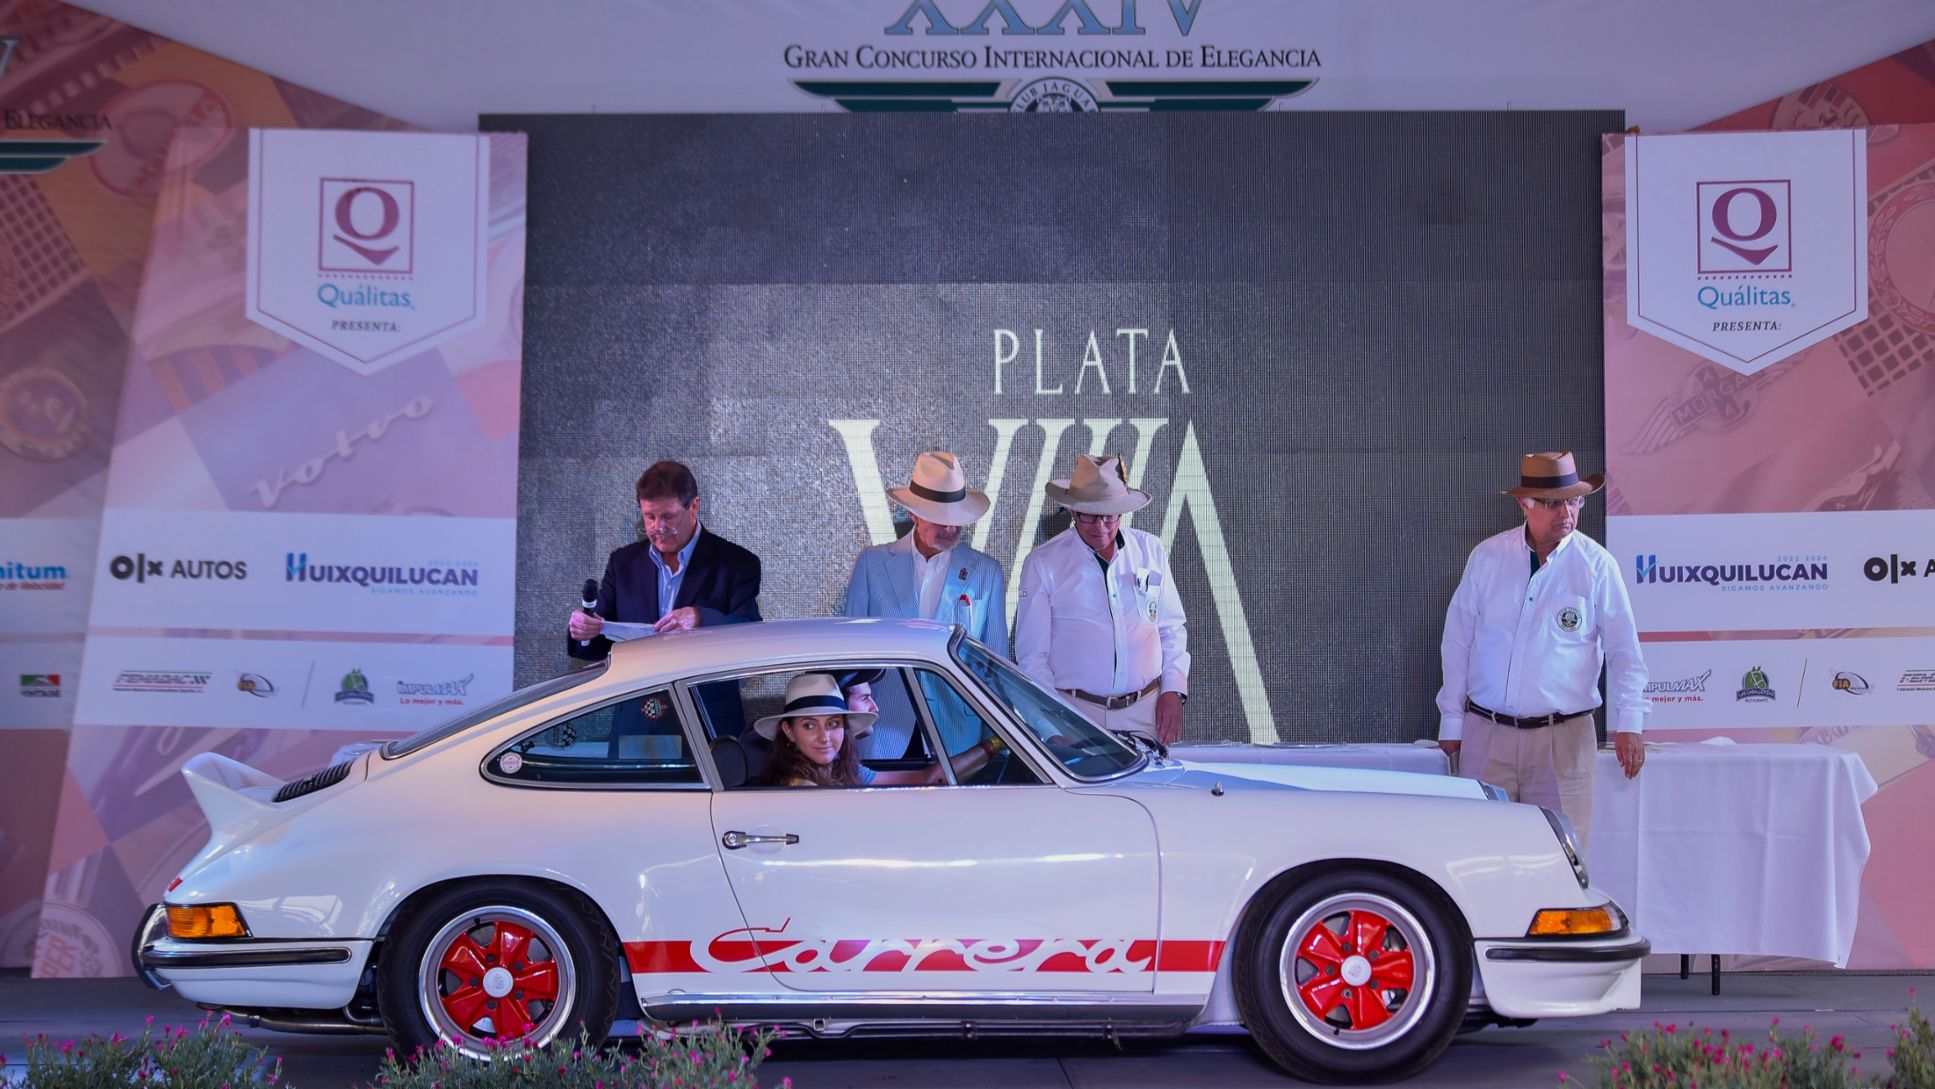 Porsche 911 Carrera RS 2.7 ganador del premio "Copa Vintage", Gran Concurso Internacional de Elegancia, Porsche México